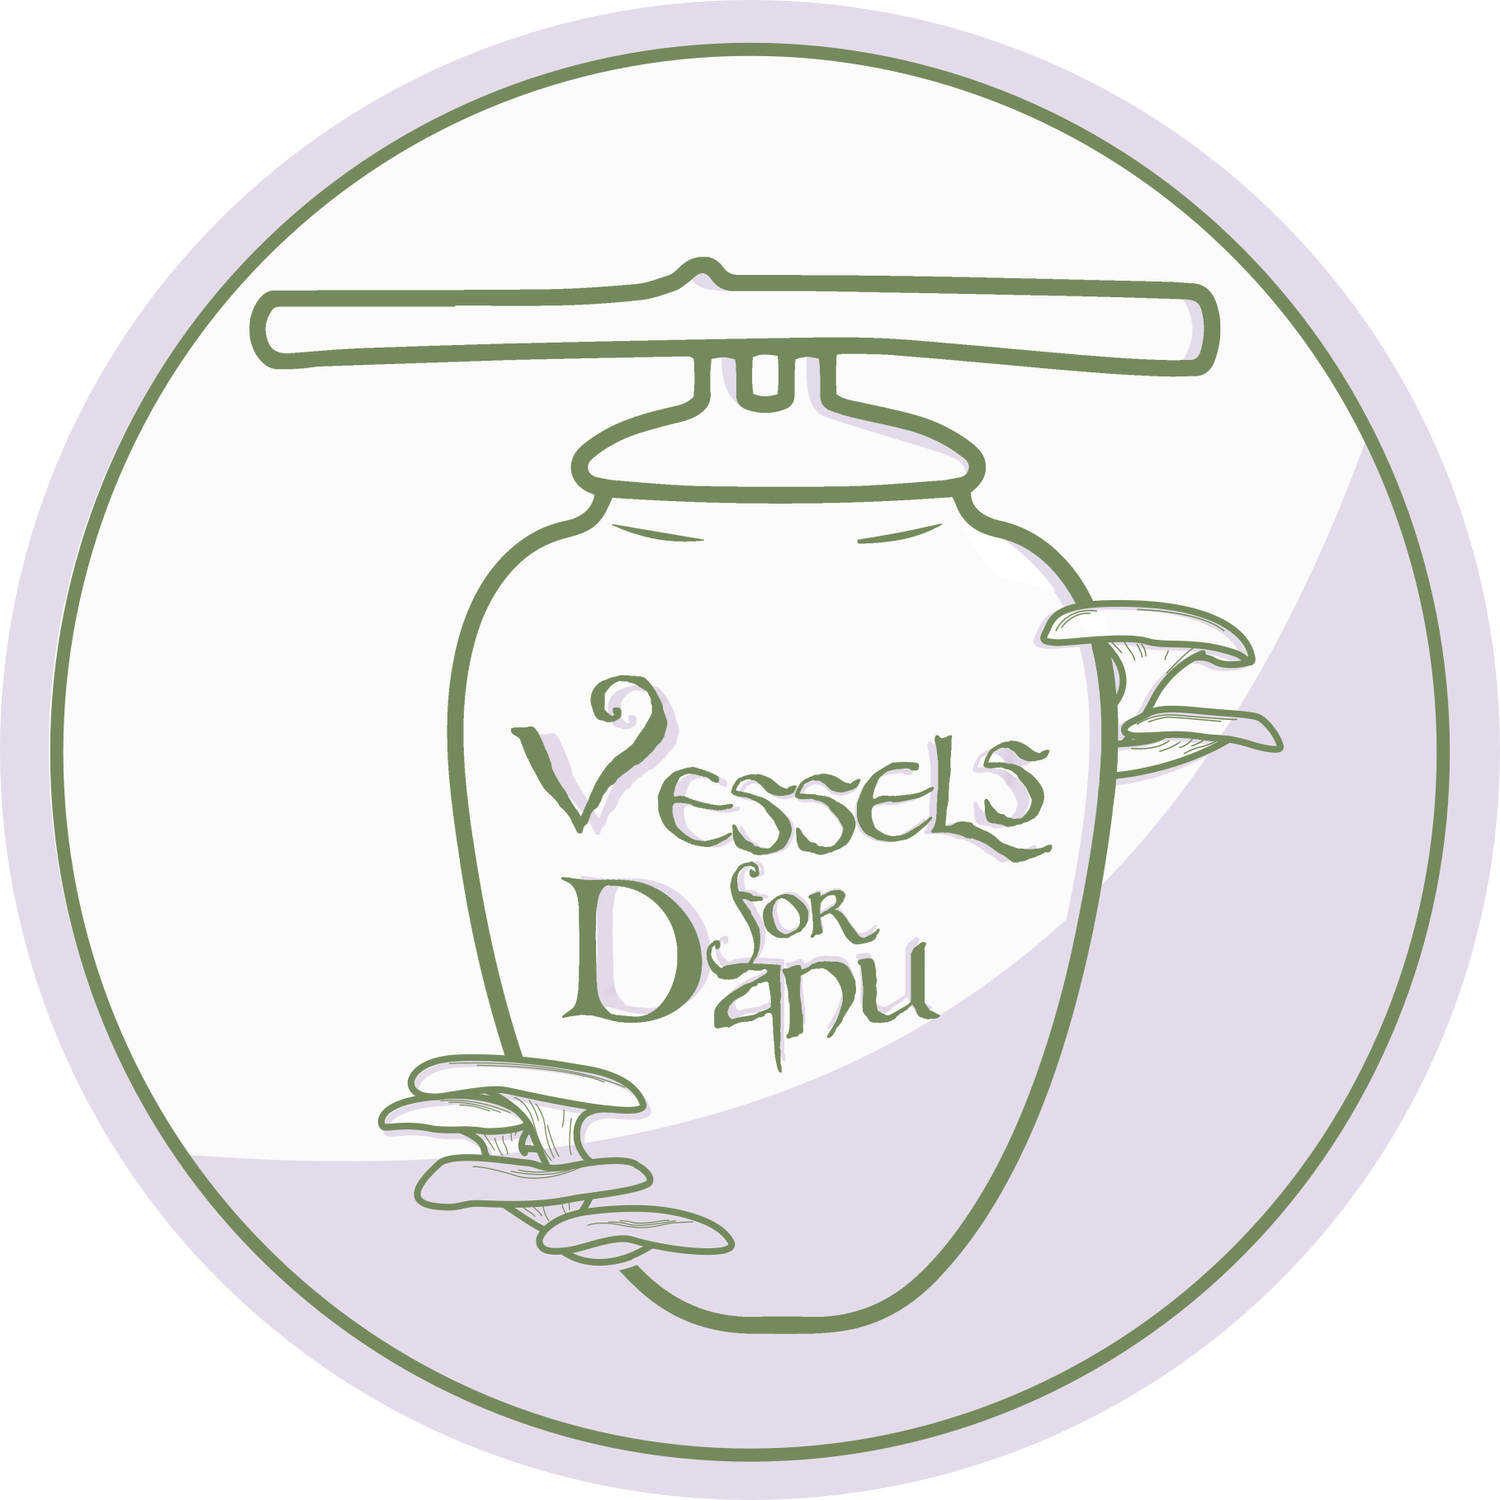 Vessels for Danu